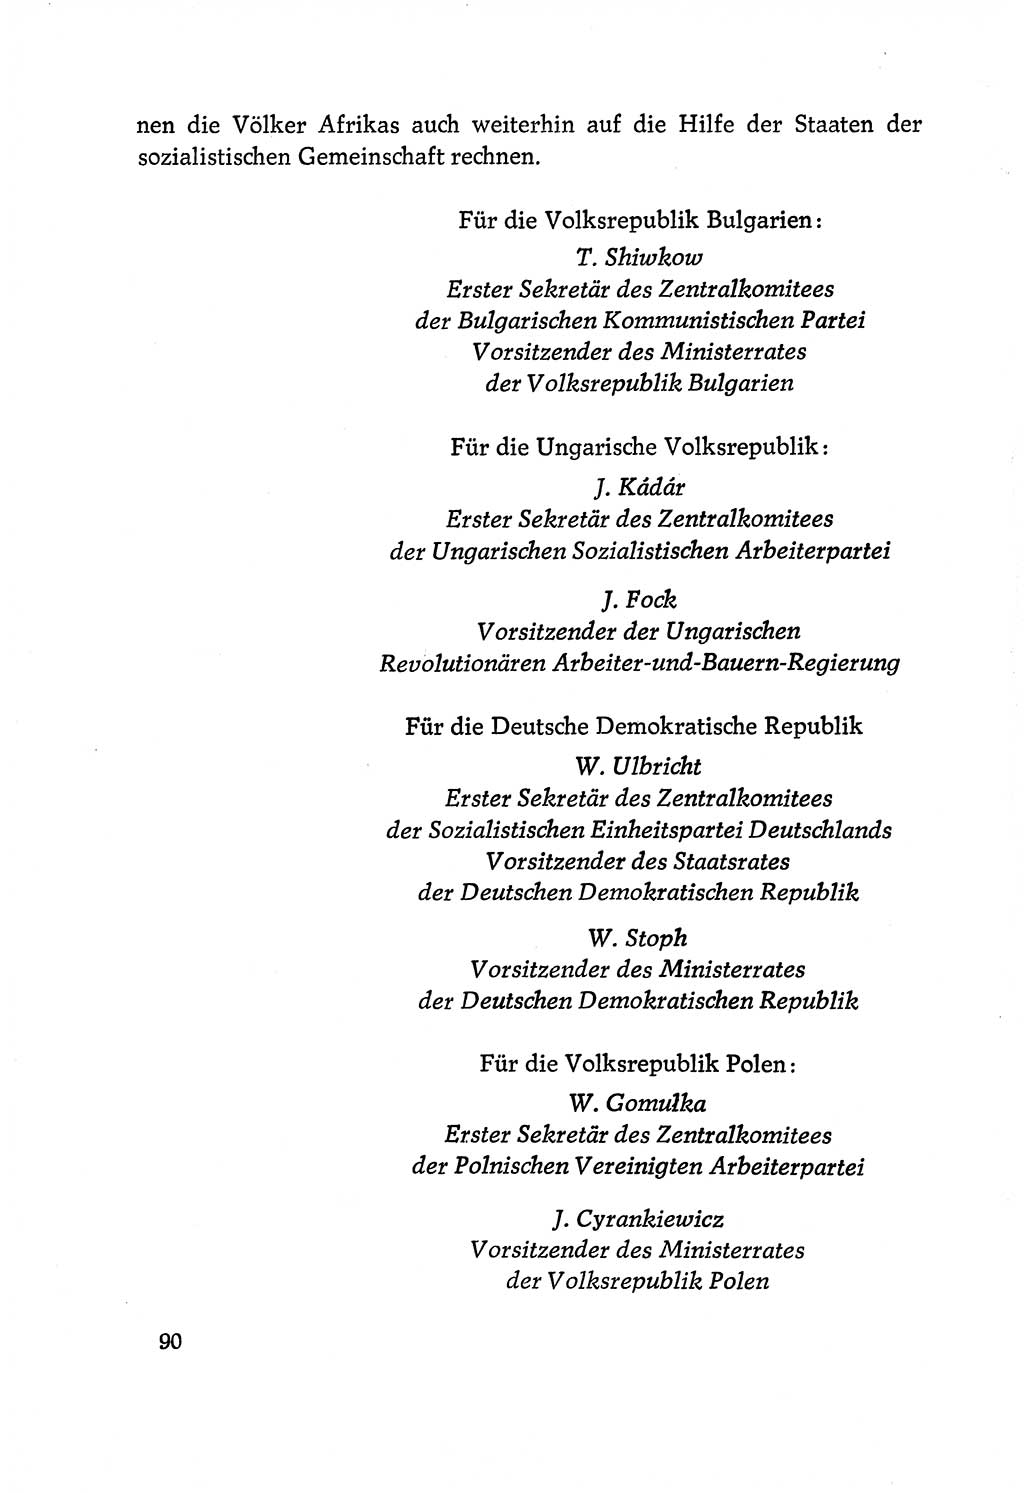 Dokumente der Sozialistischen Einheitspartei Deutschlands (SED) [Deutsche Demokratische Republik (DDR)] 1970-1971, Seite 90 (Dok. SED DDR 1970-1971, S. 90)